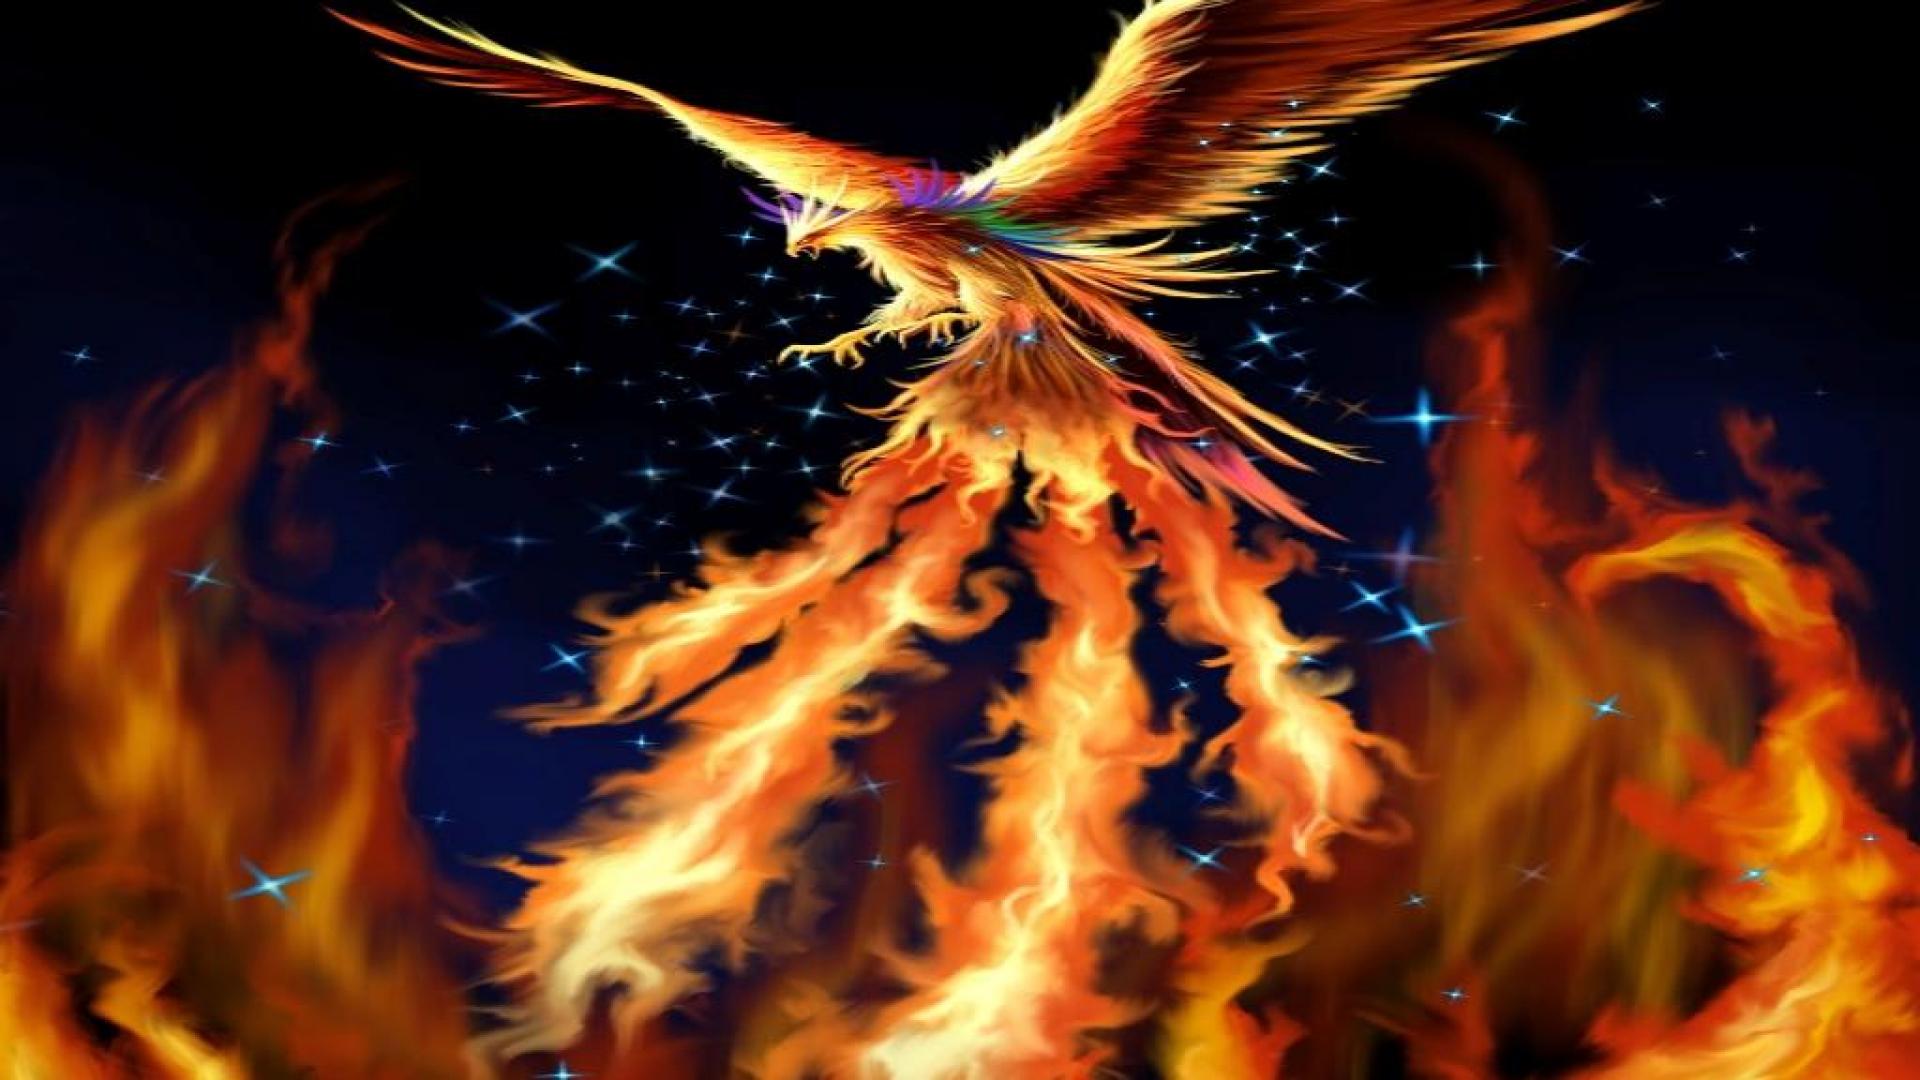 Fire Phoenix Wallpaper Hd wwwimgkidcom   The Image Kid